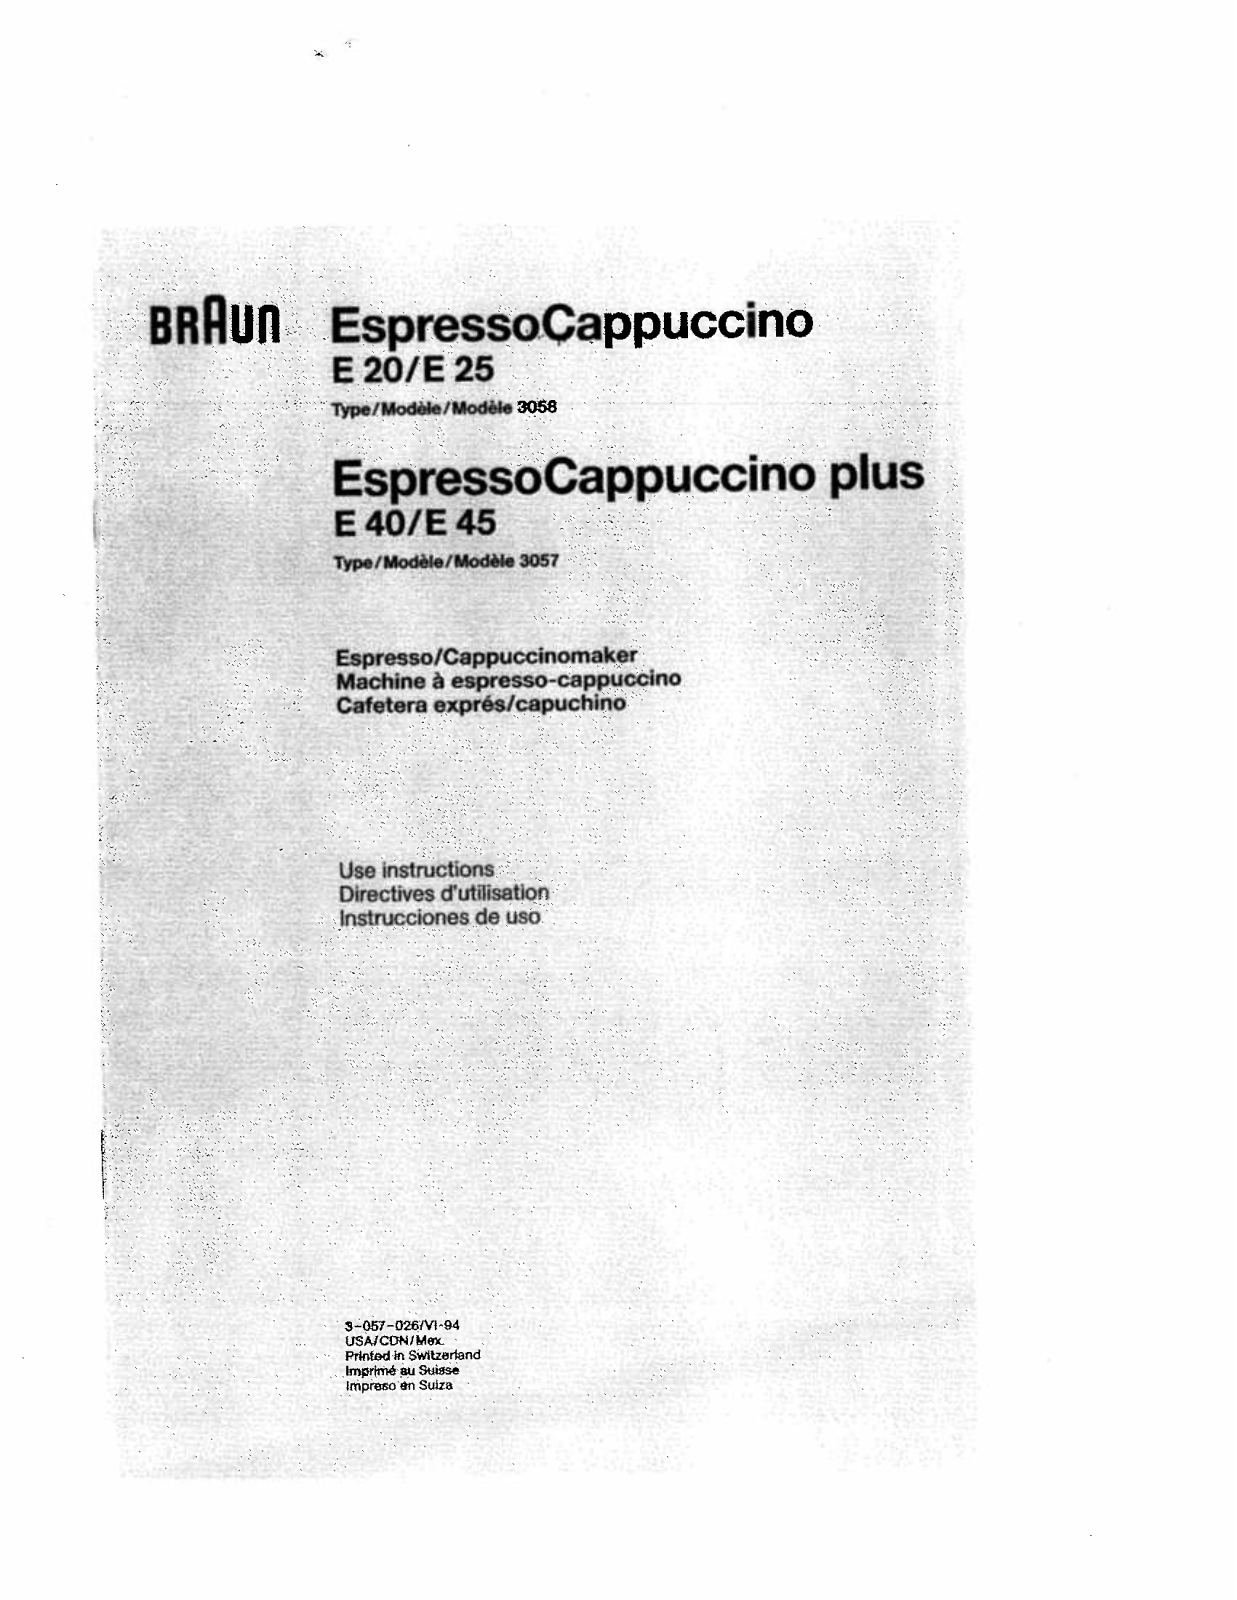 BRAUN ESPRESSO CAPPUCCINO E25 User Manual